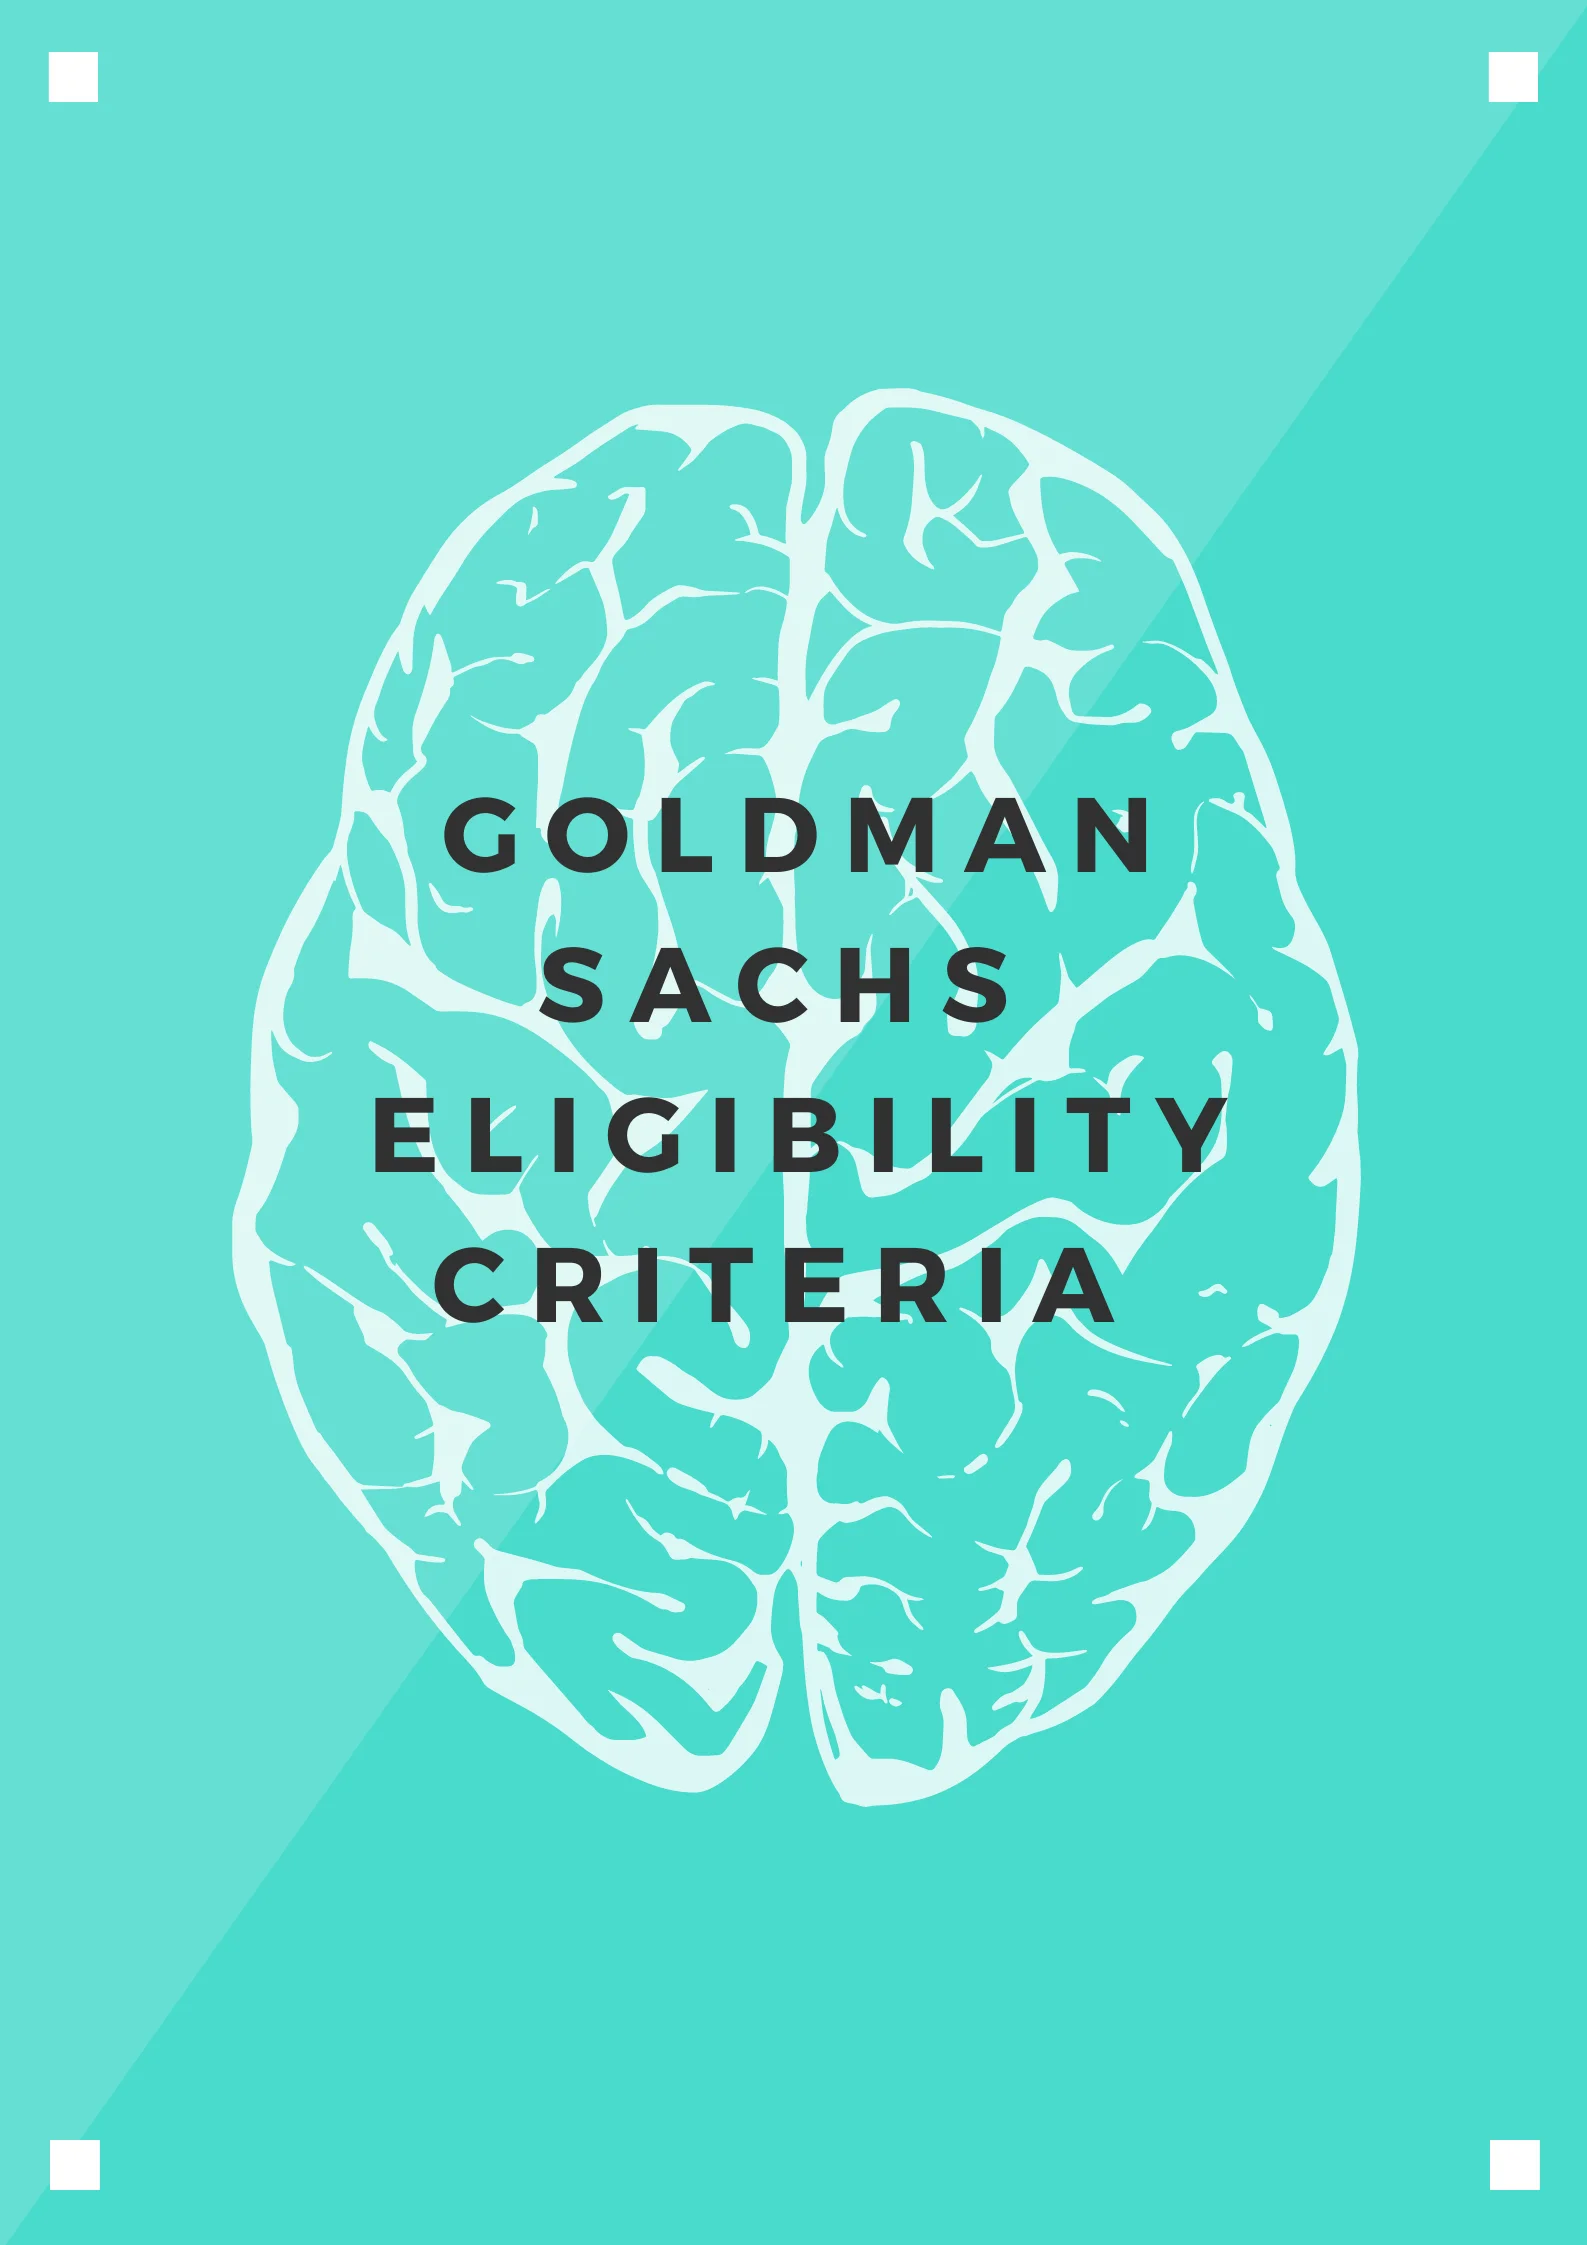 Goldman Sachs Eligibility Criteria 2021